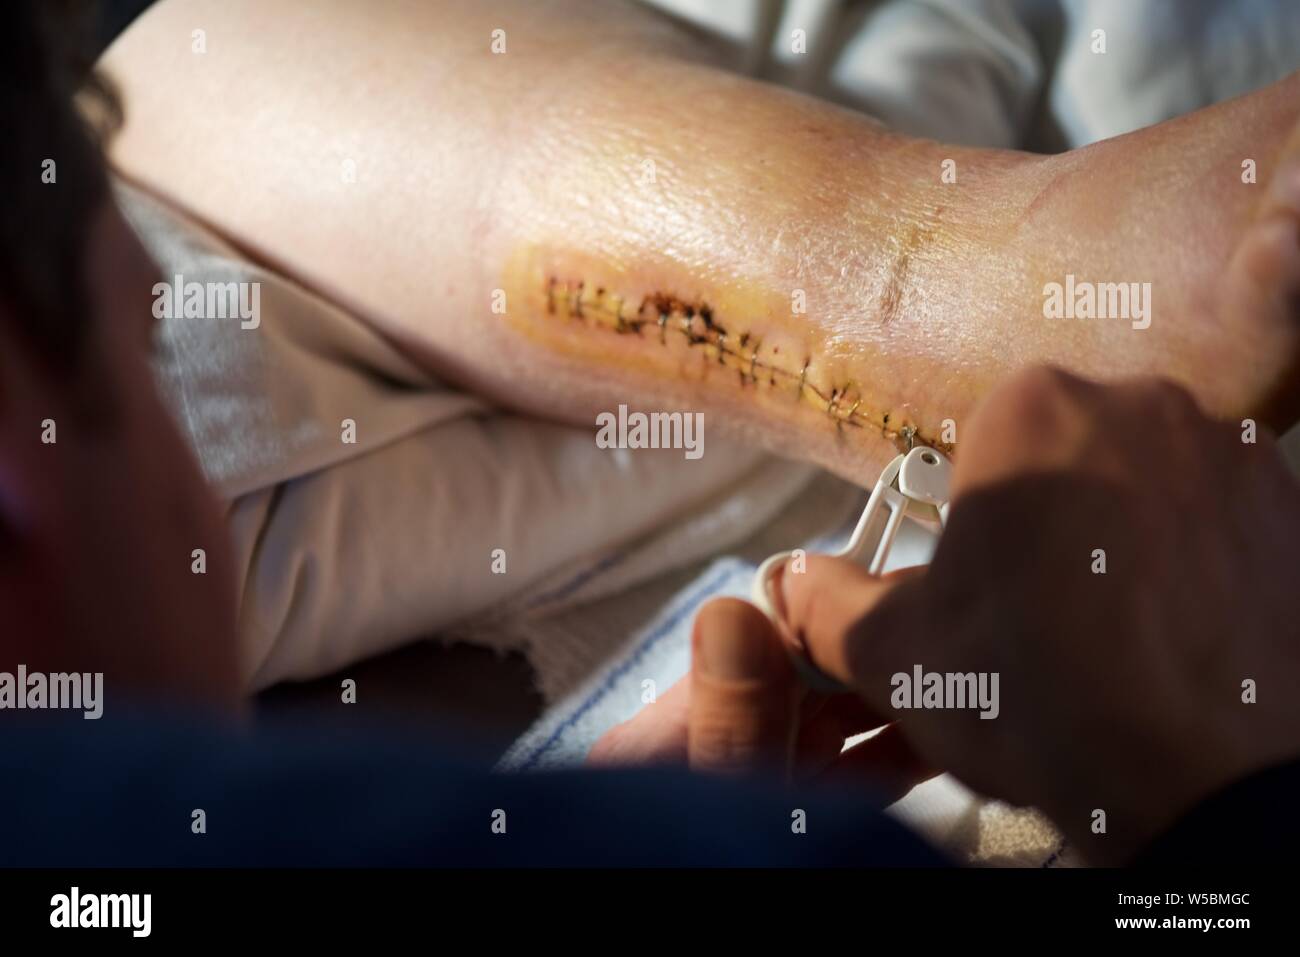 Agrafes chirurgicales : suppression des agrafes chirurgicales de la cheville droite d'une femme après une intervention chirurgicale pour réparer une fracture de la cheville Banque D'Images